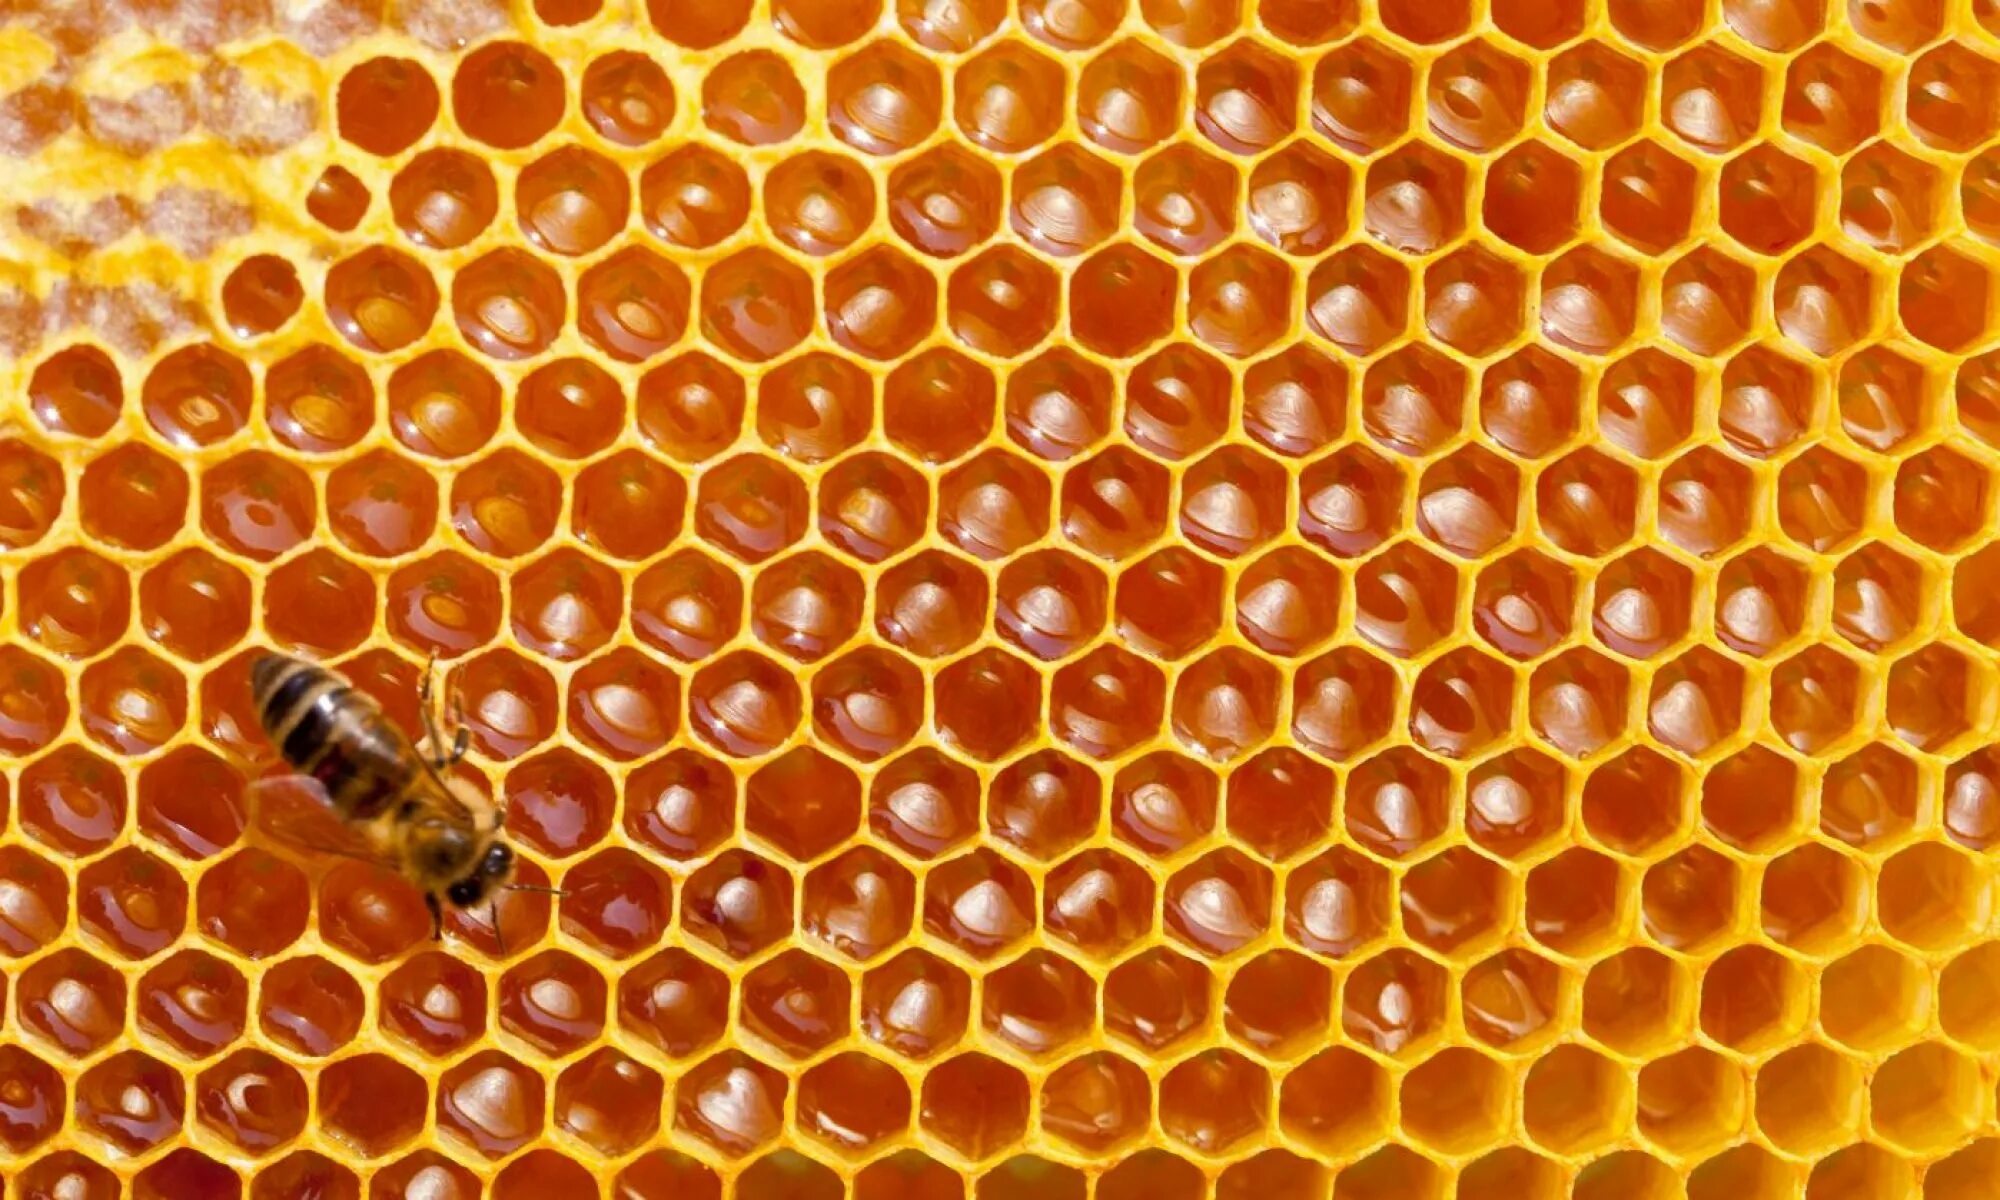 Big honey. Соты. Соты пчелиные. Медовые соты. Пчелиные соты с медом.